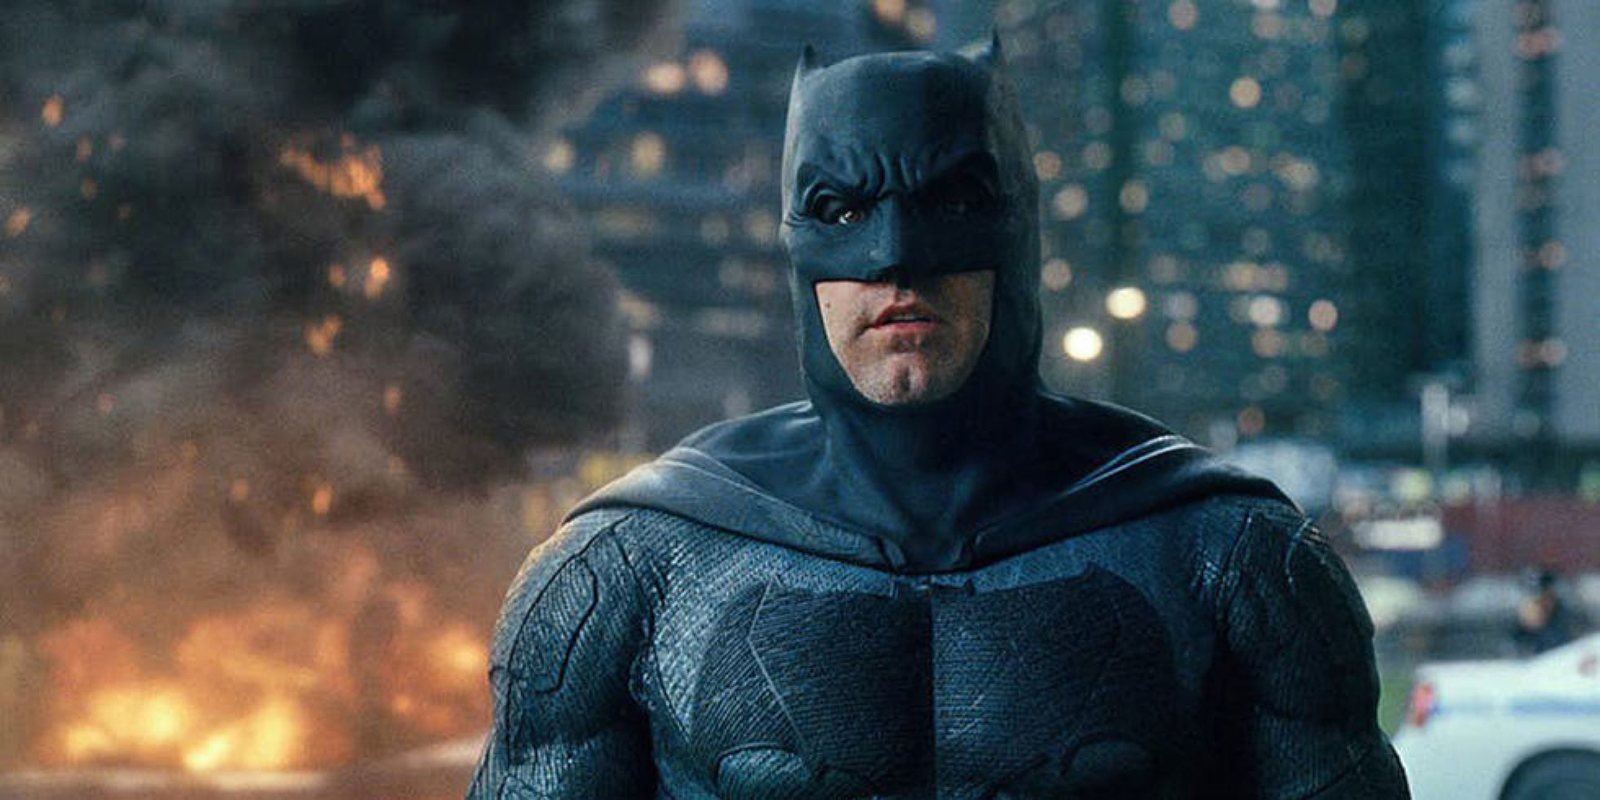 La recaída de Ben Affleck pone en peligro su papel como Batman por motivos económicos